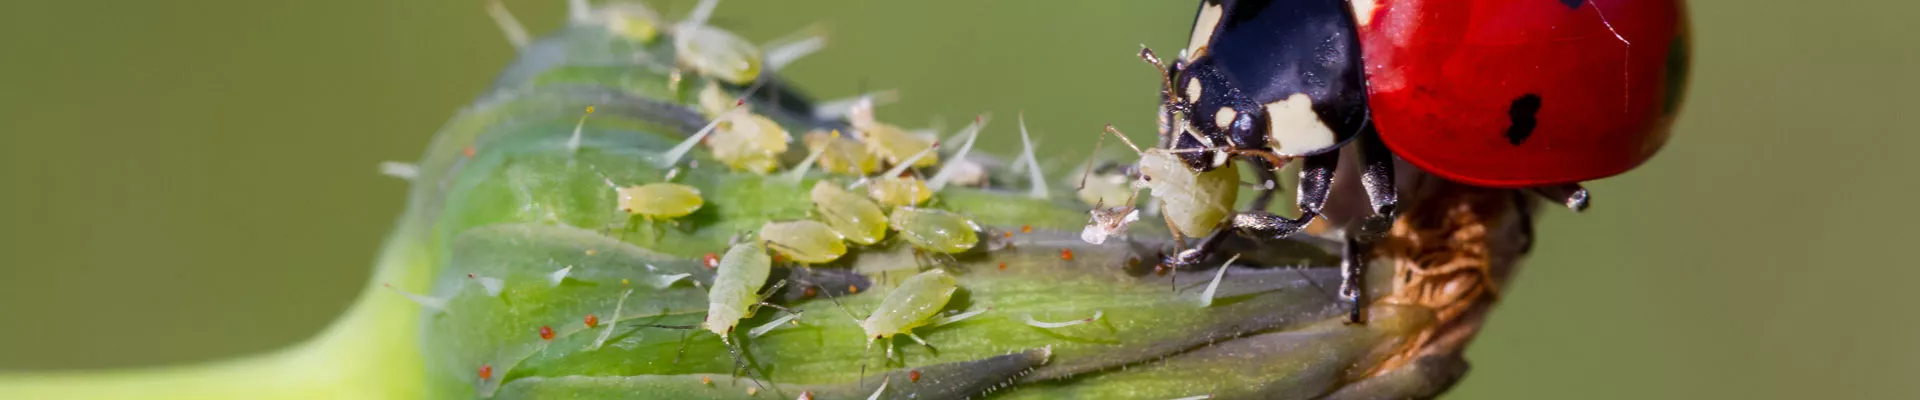 Boj proti škůdcům a chorobám rostlin – biologická ochrana